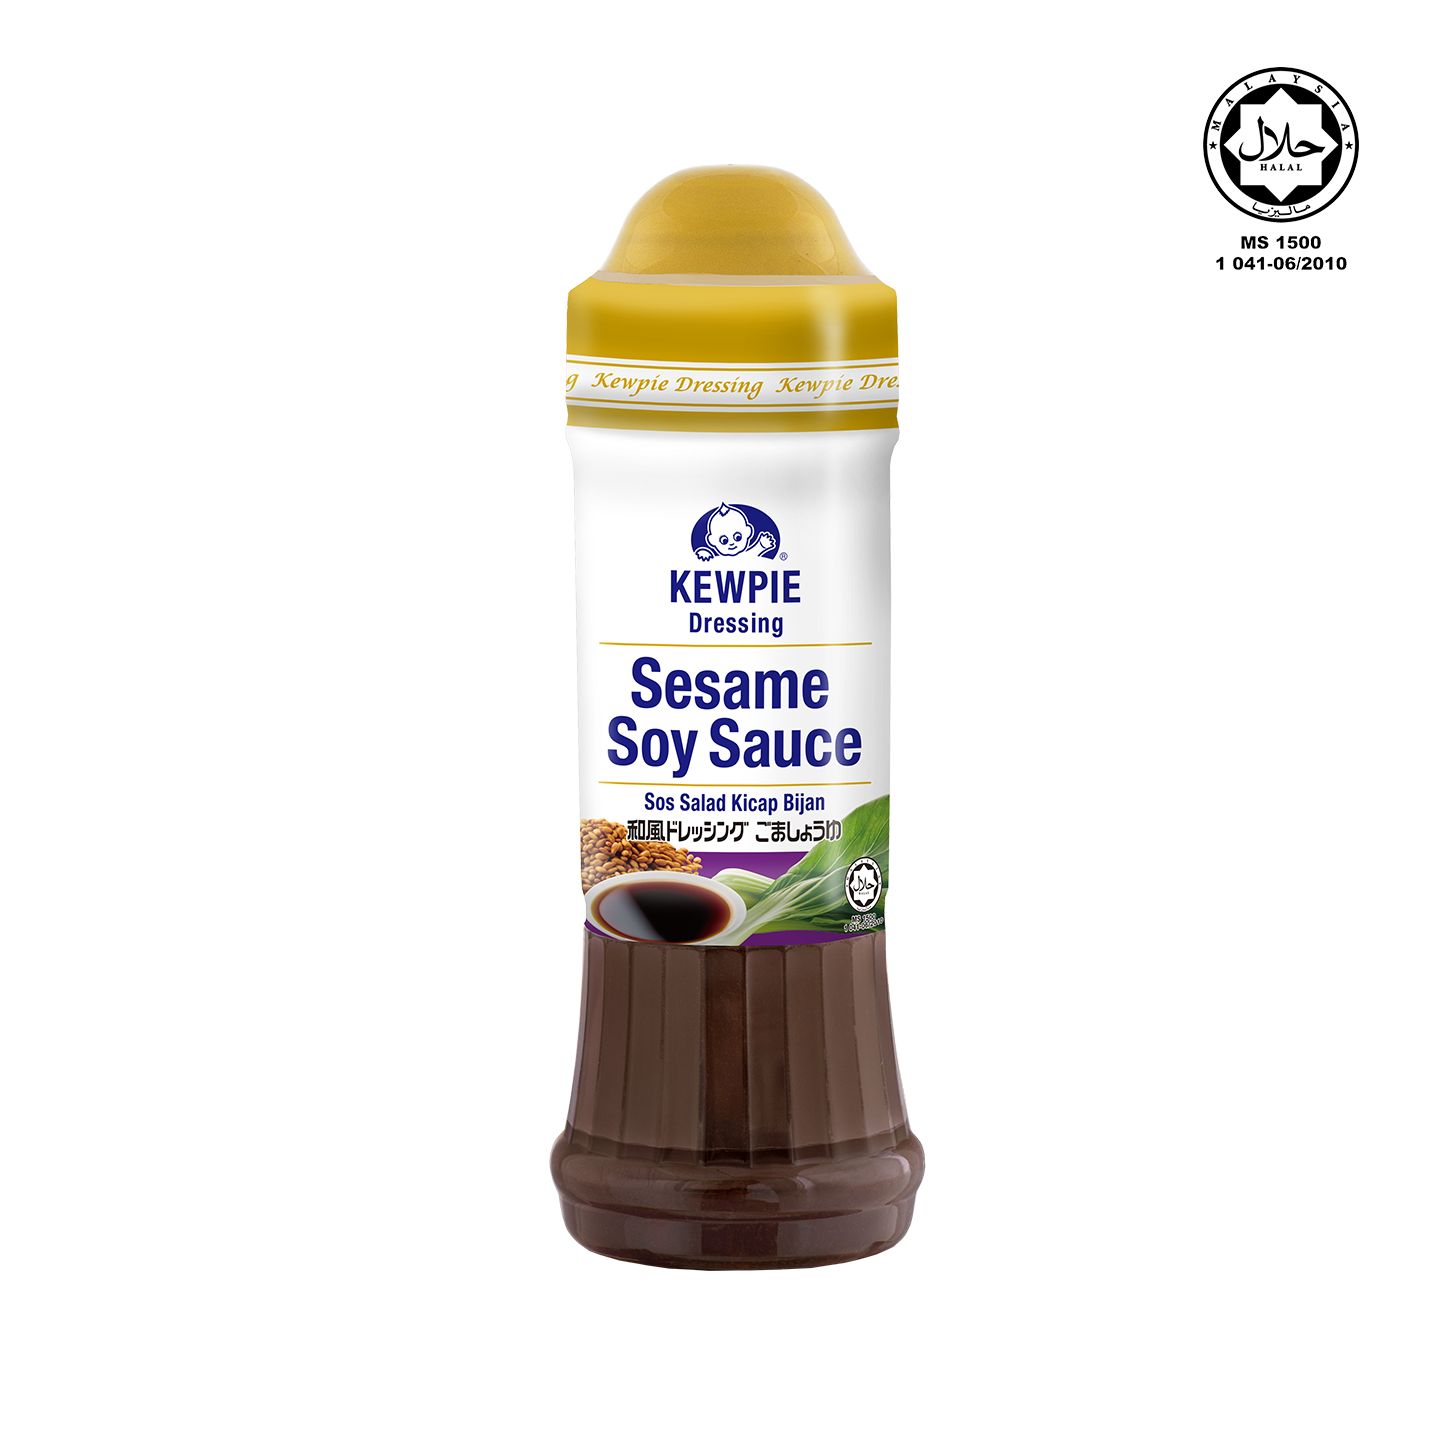 Kewpie Dressing Sesame Soy Sauce